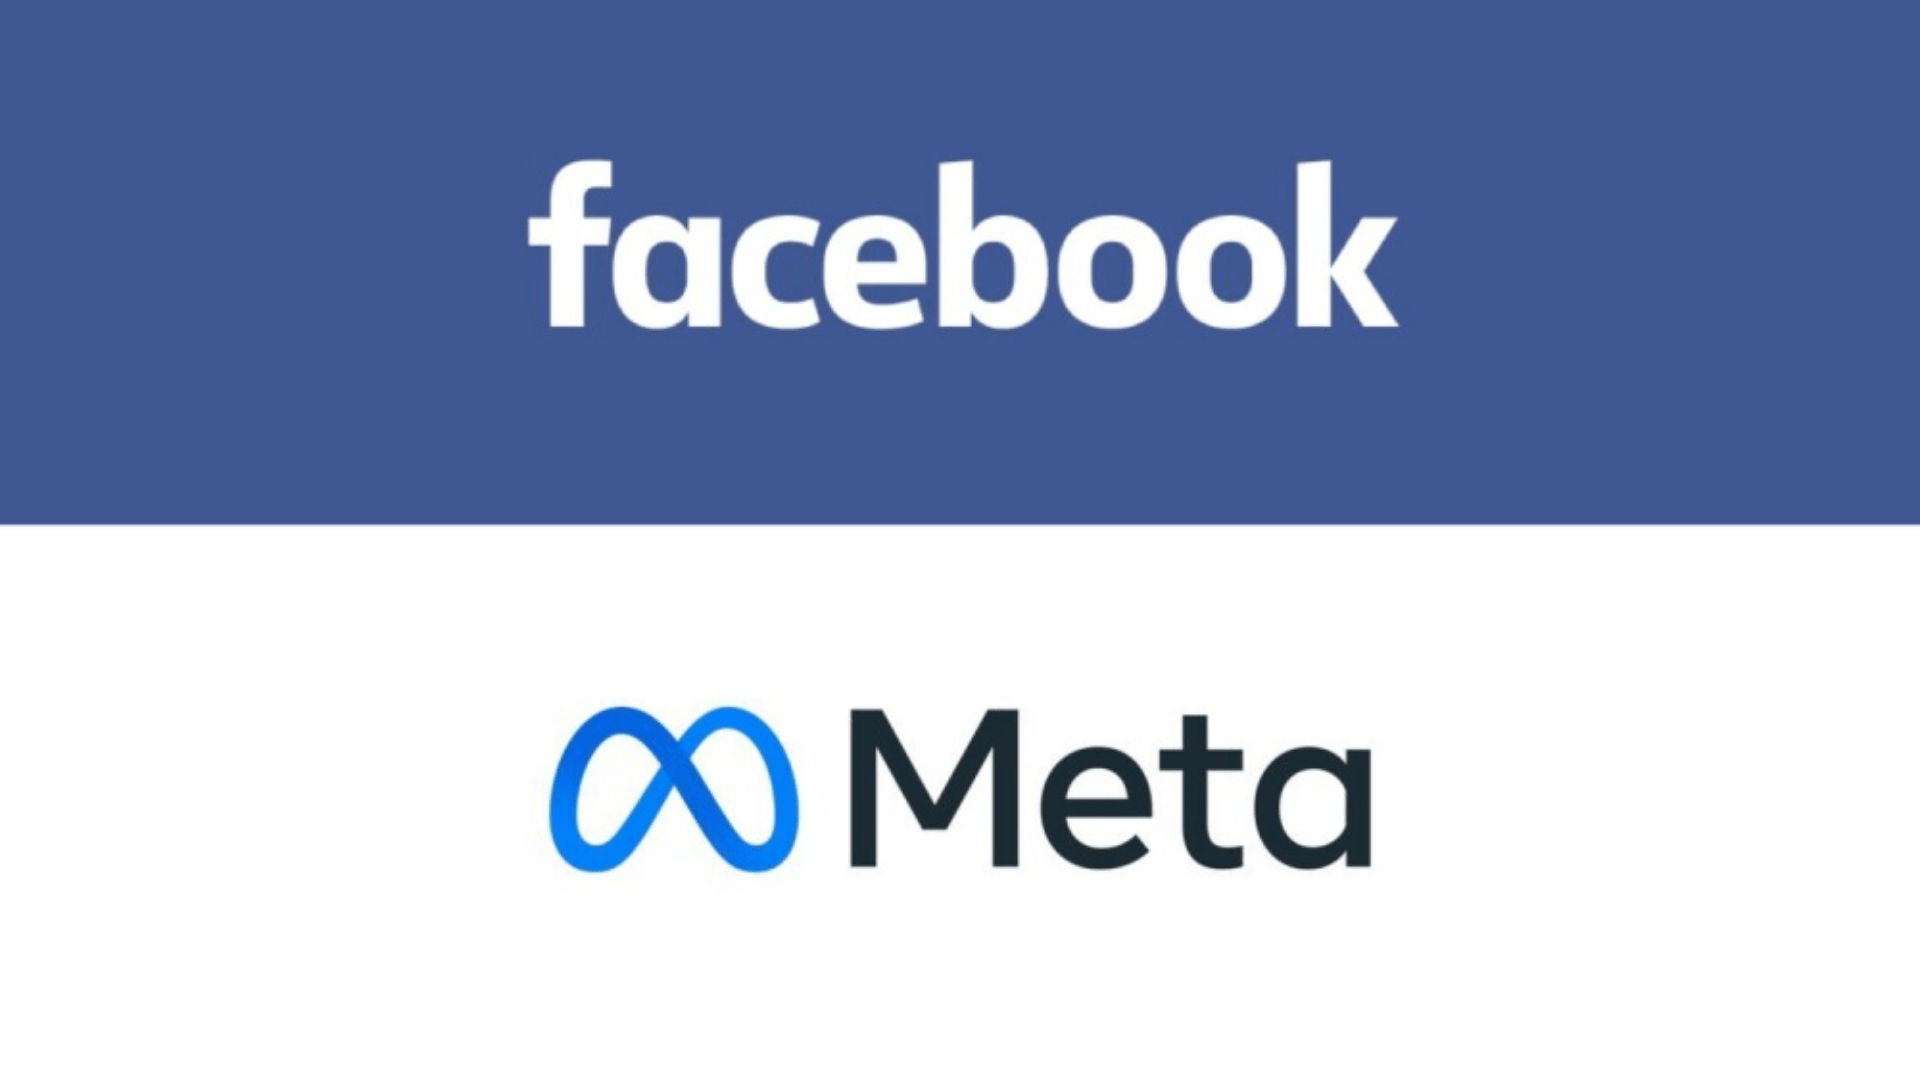 La compañía de Facebook pasa a llamarse Meta